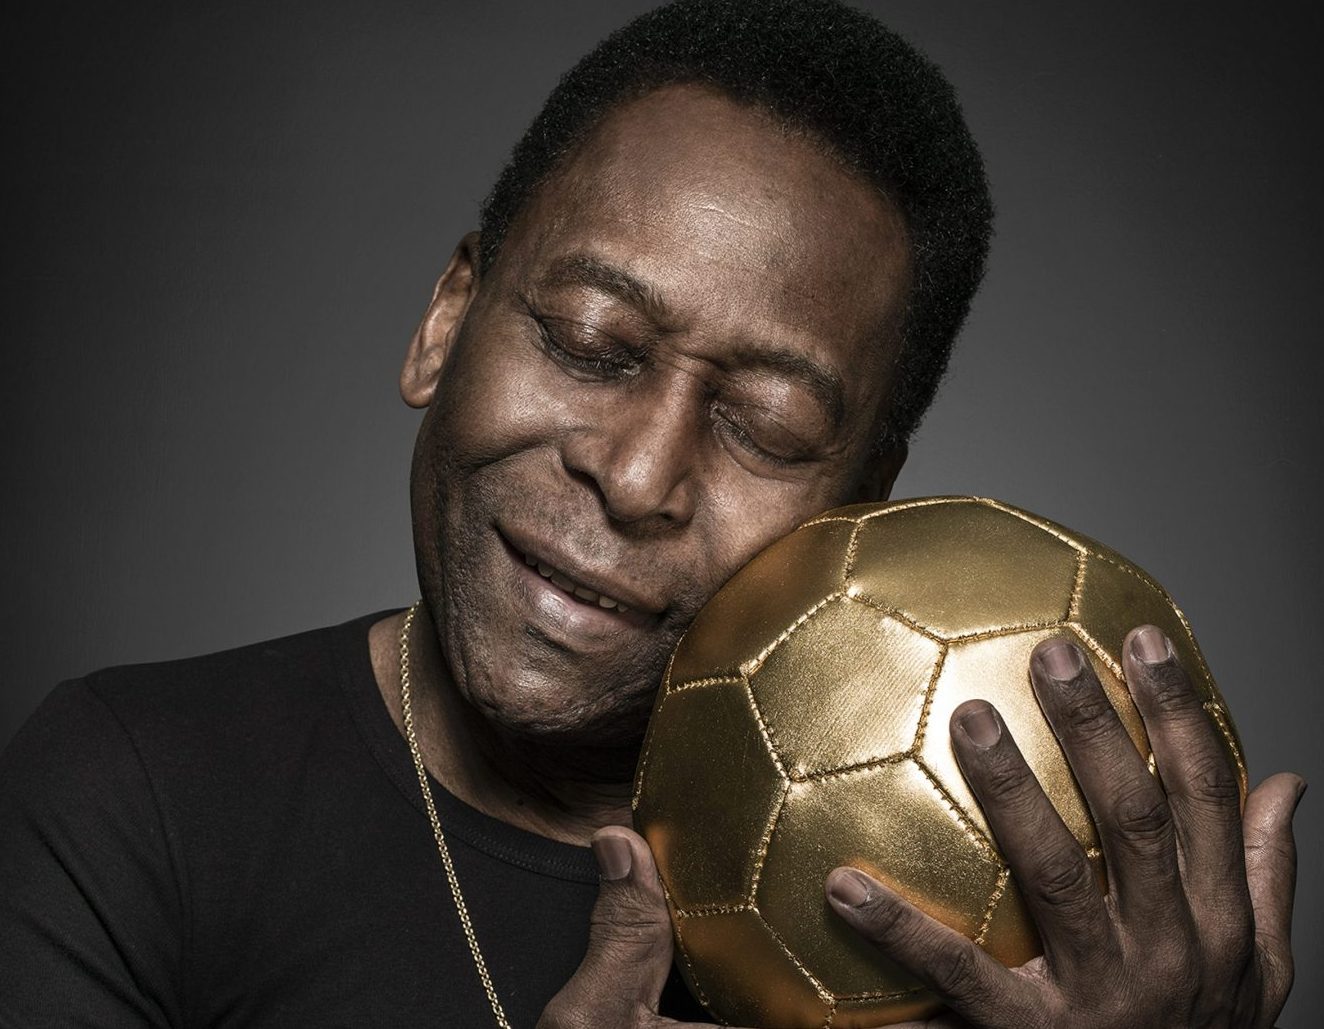 Refém do andador, Pelé pode se tratar com testosterona